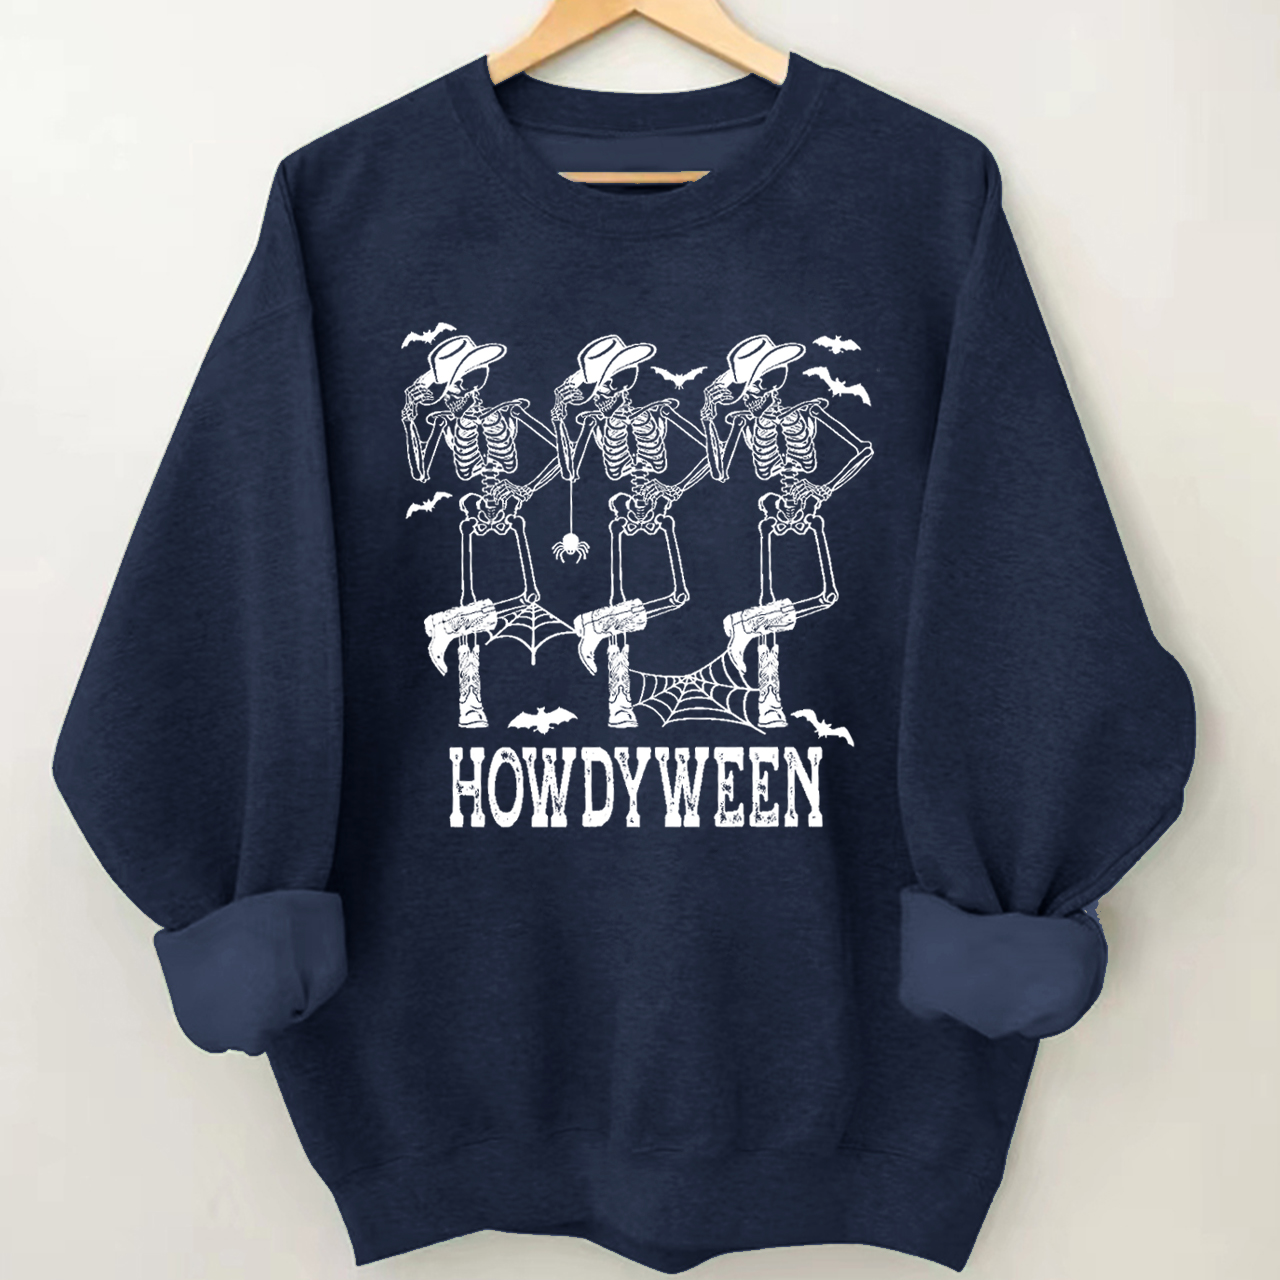 Howdy Cowboy Halloween Sweatshirt